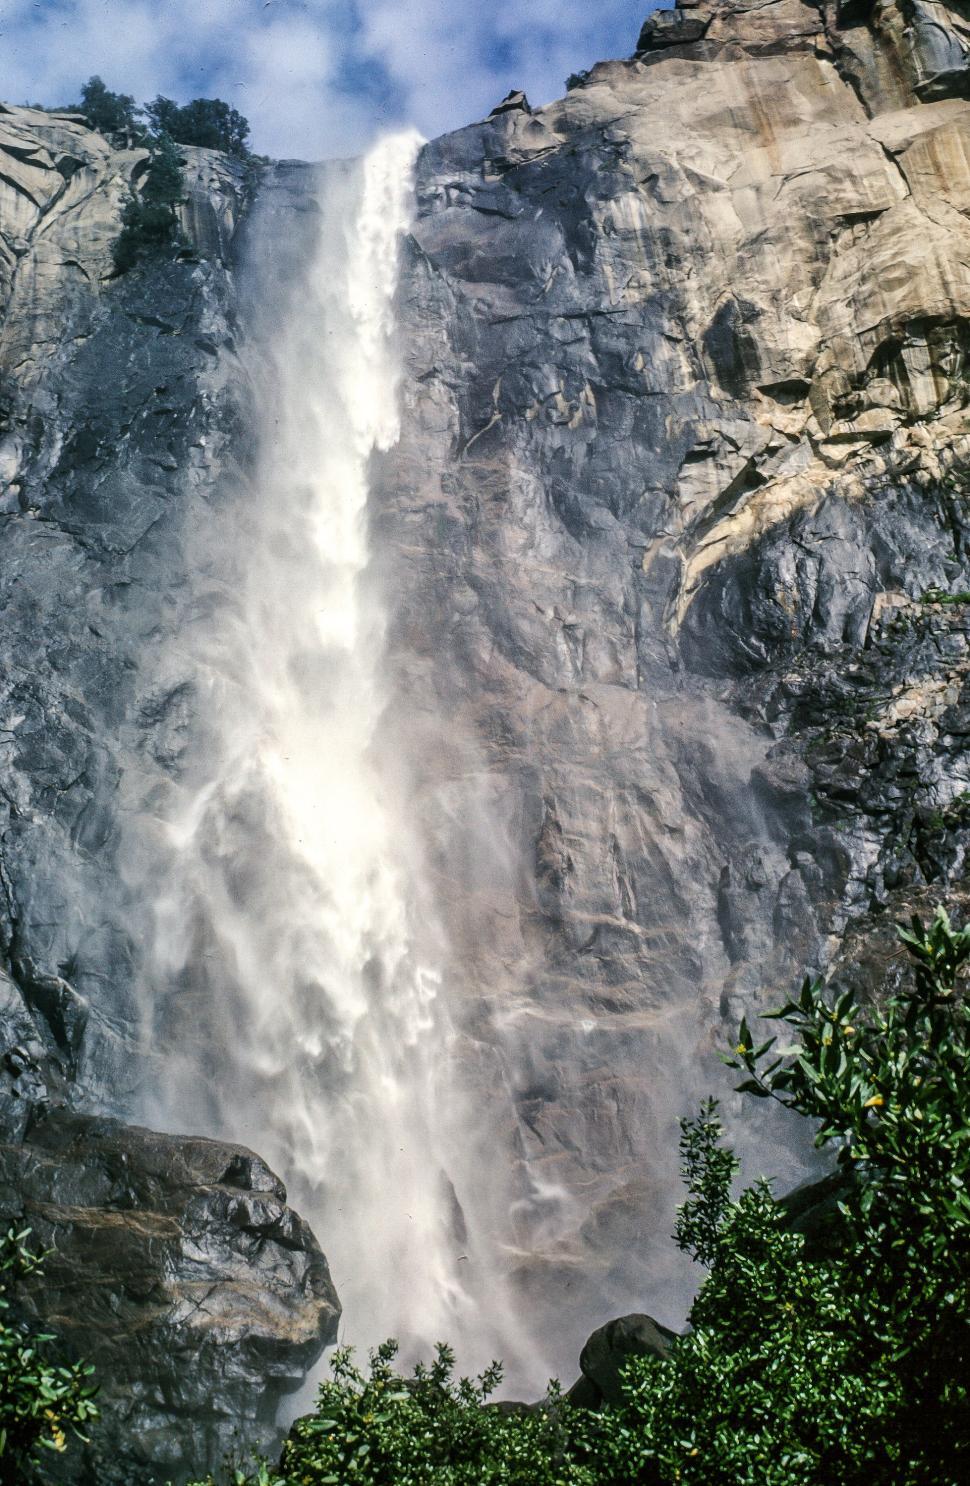 Free Image of Yosemite Falls 